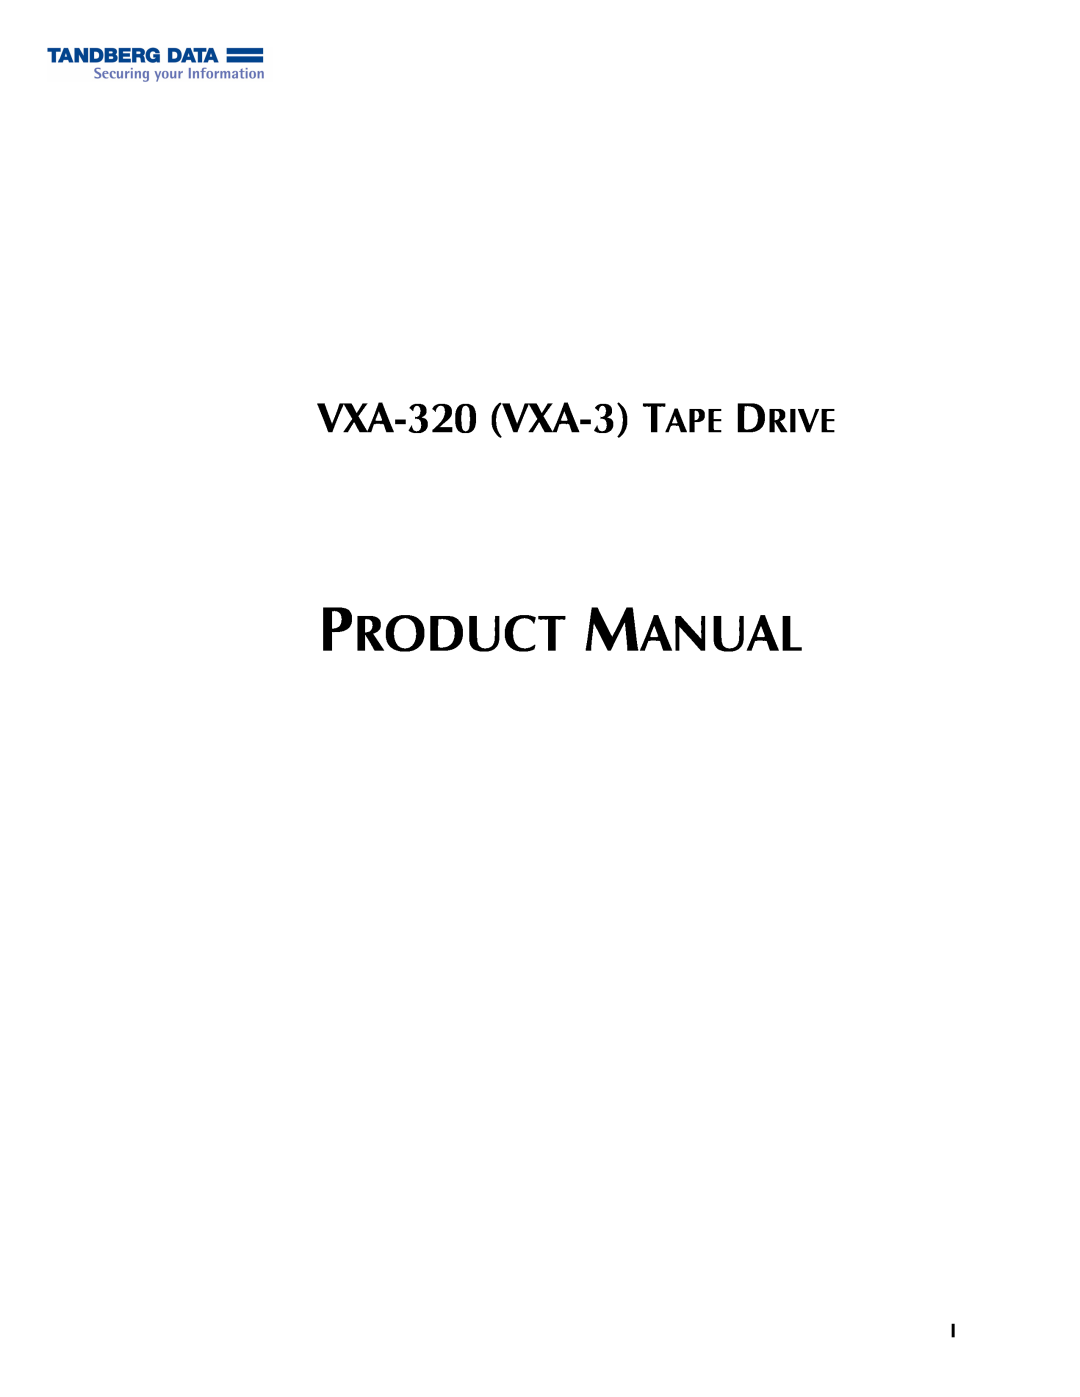 Tandberg Data VXA-320 (VXA-3) manual VXA-320 VXA-3TAPE DRIVE, Product Manual 